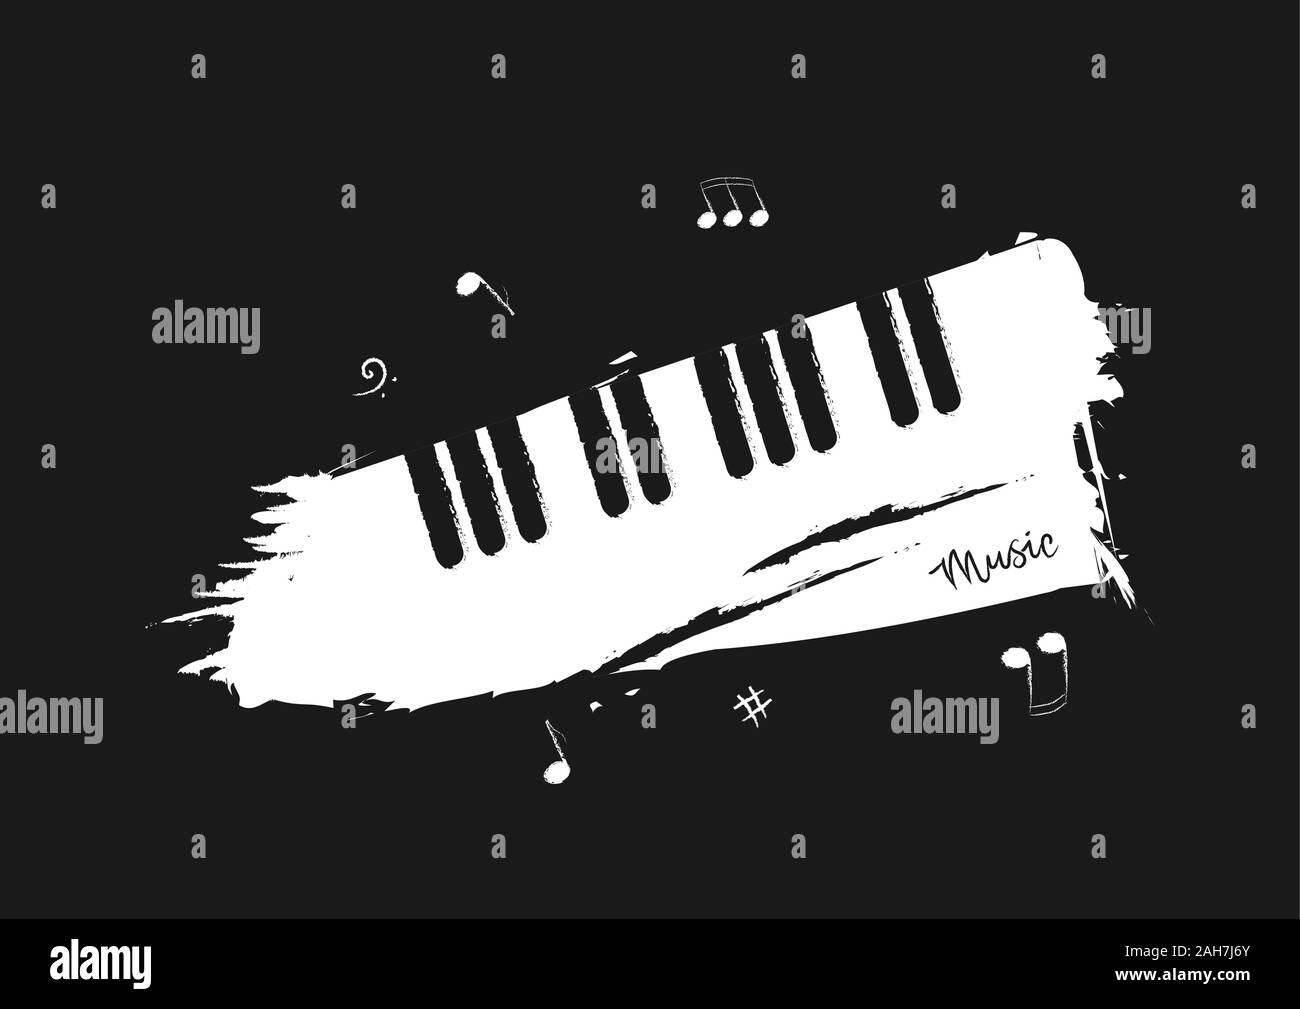 Sottofondo musicale nello stile di un disegno a matita. In bianco e nero di  tasti di pianoforte con note musicali e le parole Immagine e Vettoriale -  Alamy